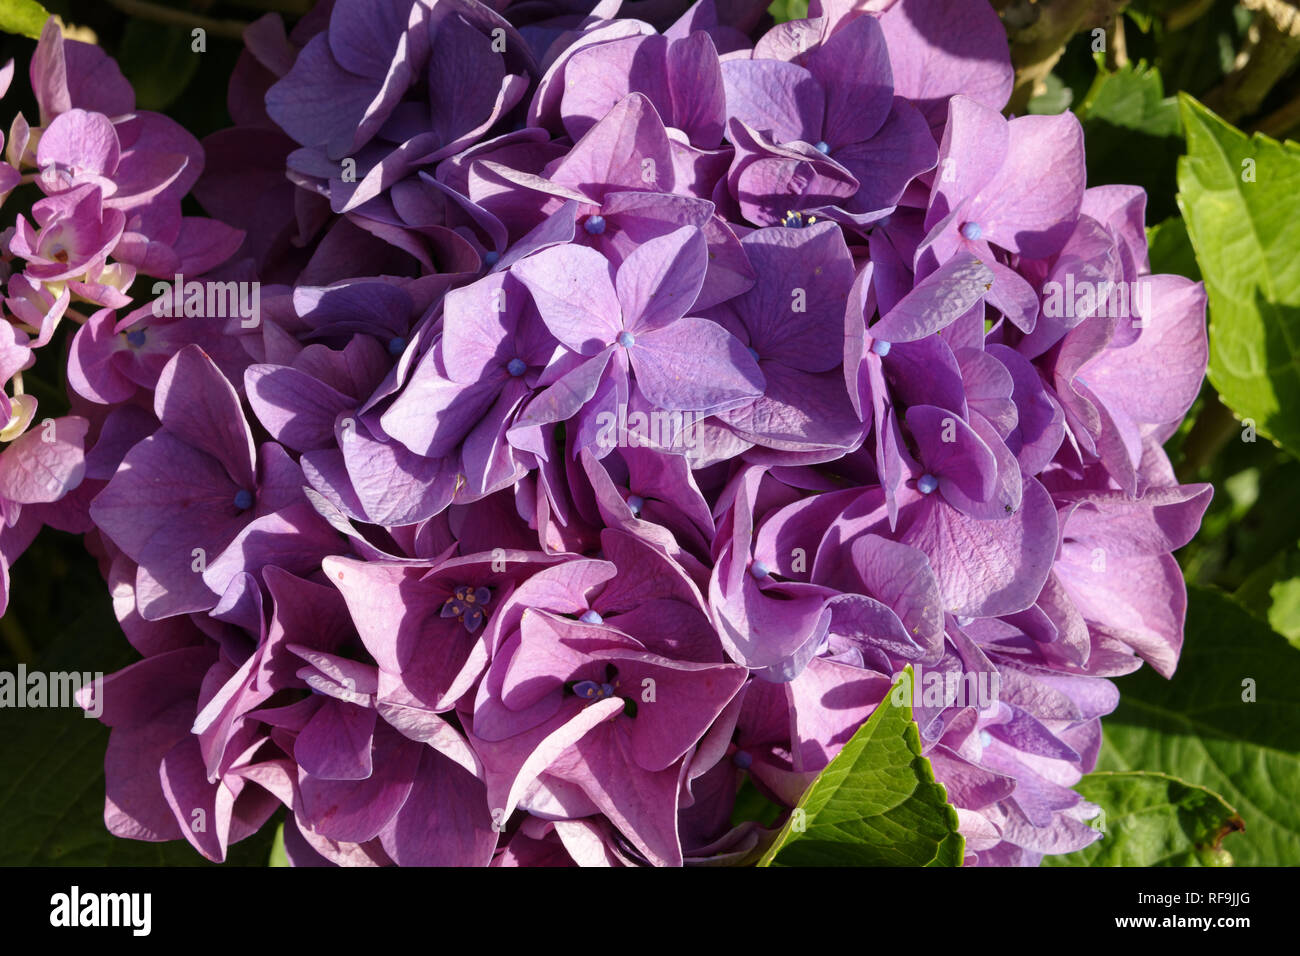 Hortensia flower Stock Photo